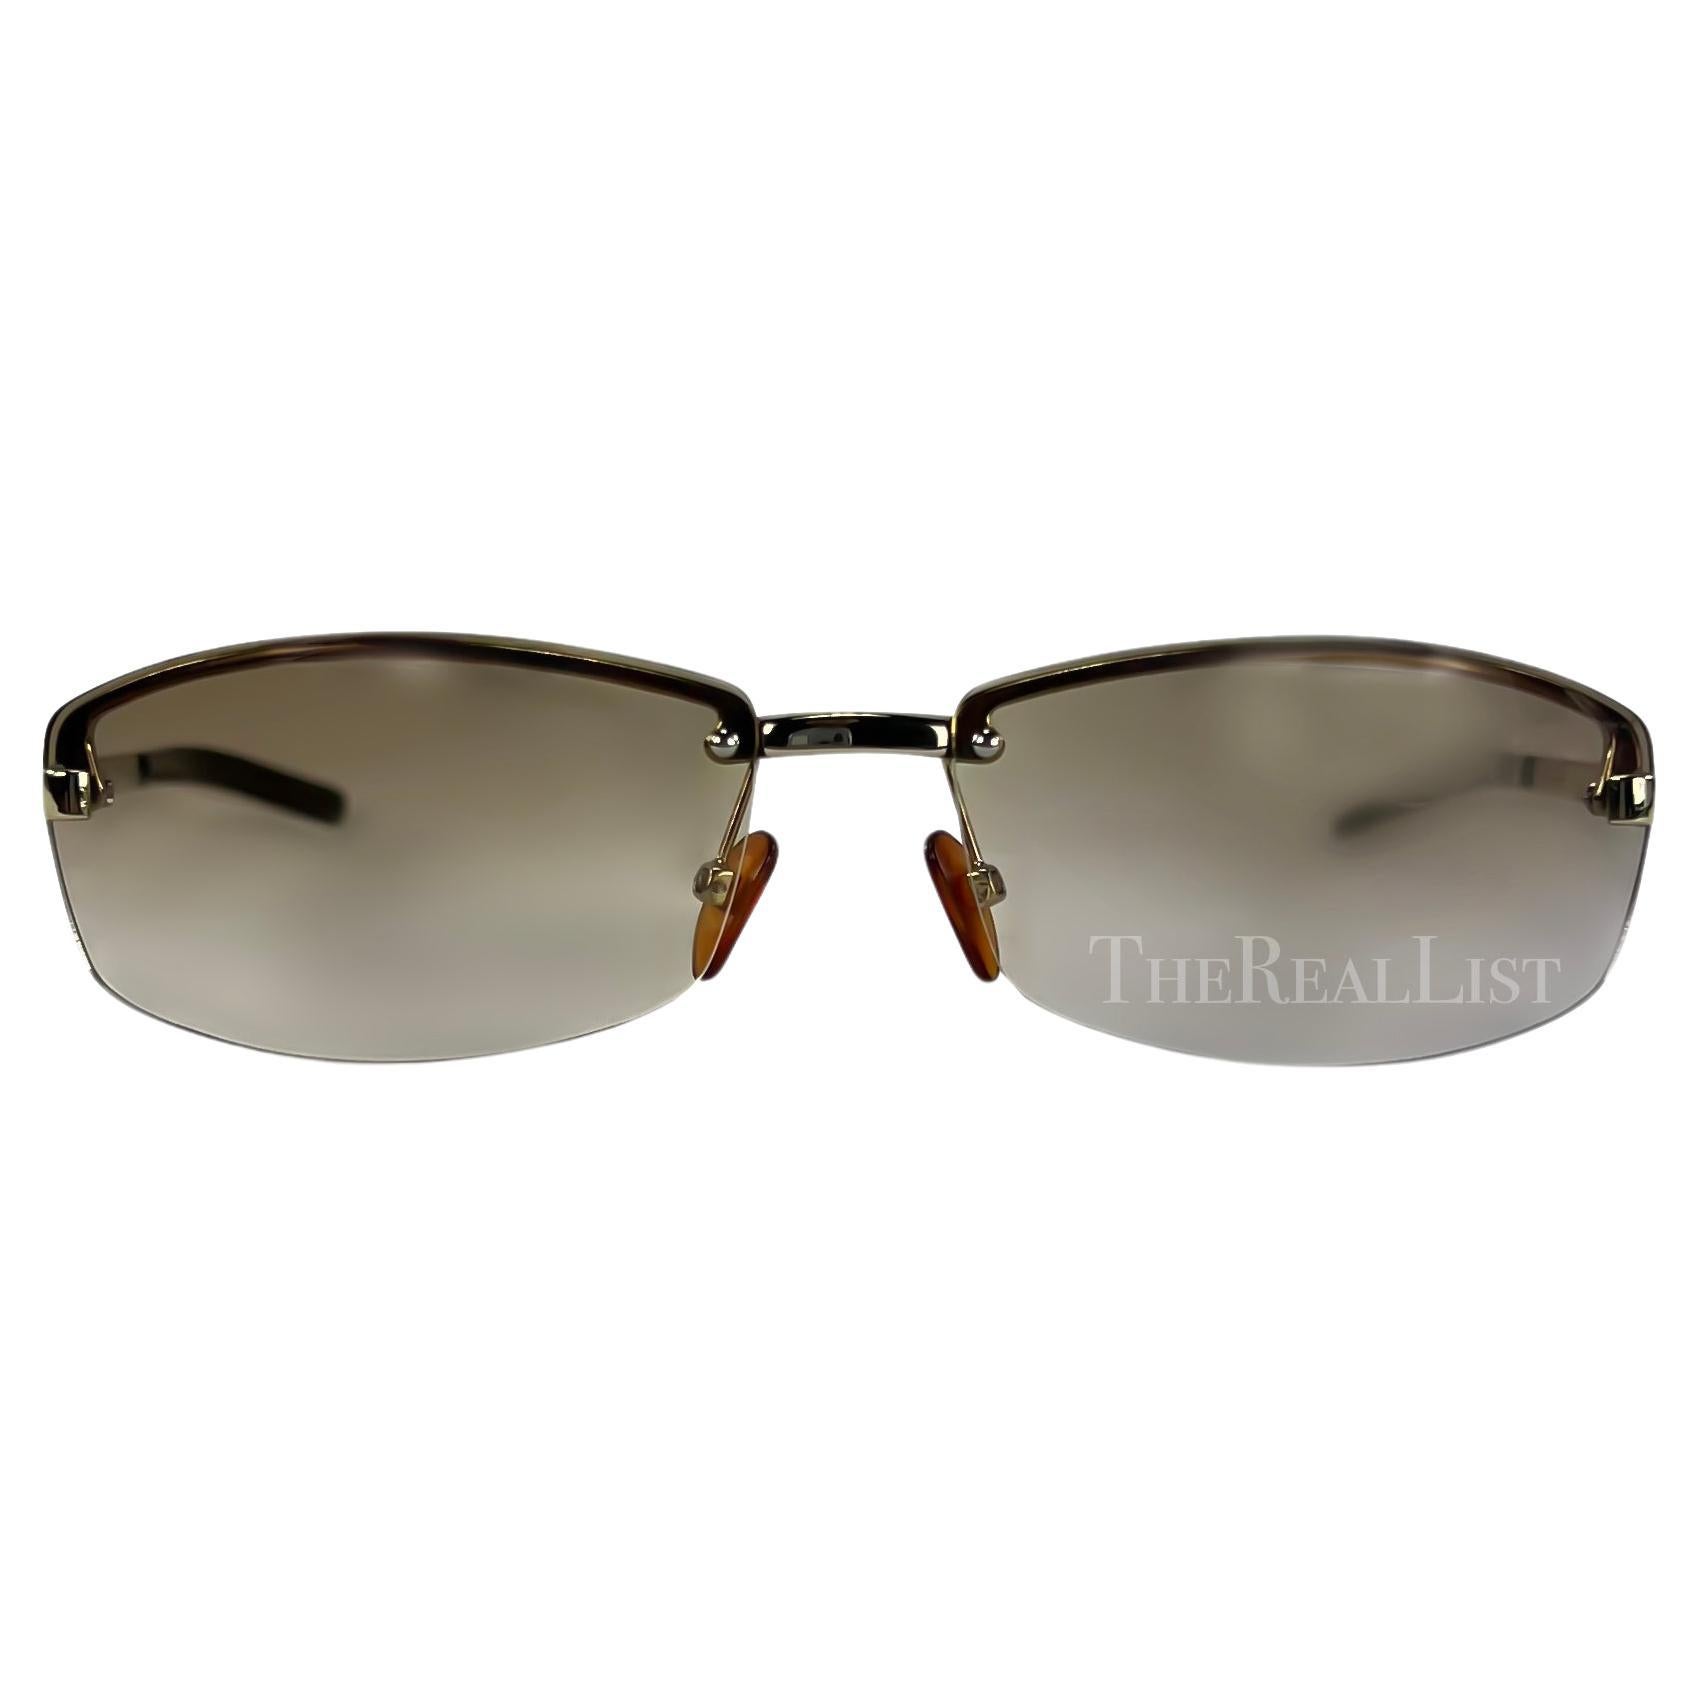 Wir präsentieren eine braune, randlose Gucci-Sonnenbrille, entworfen von Tom Ford. Diese Sonnenbrille aus den frühen 2000er Jahren hat leicht getönte Gläser und dünne silberfarbene Bügel, die mit einem quadratischen 